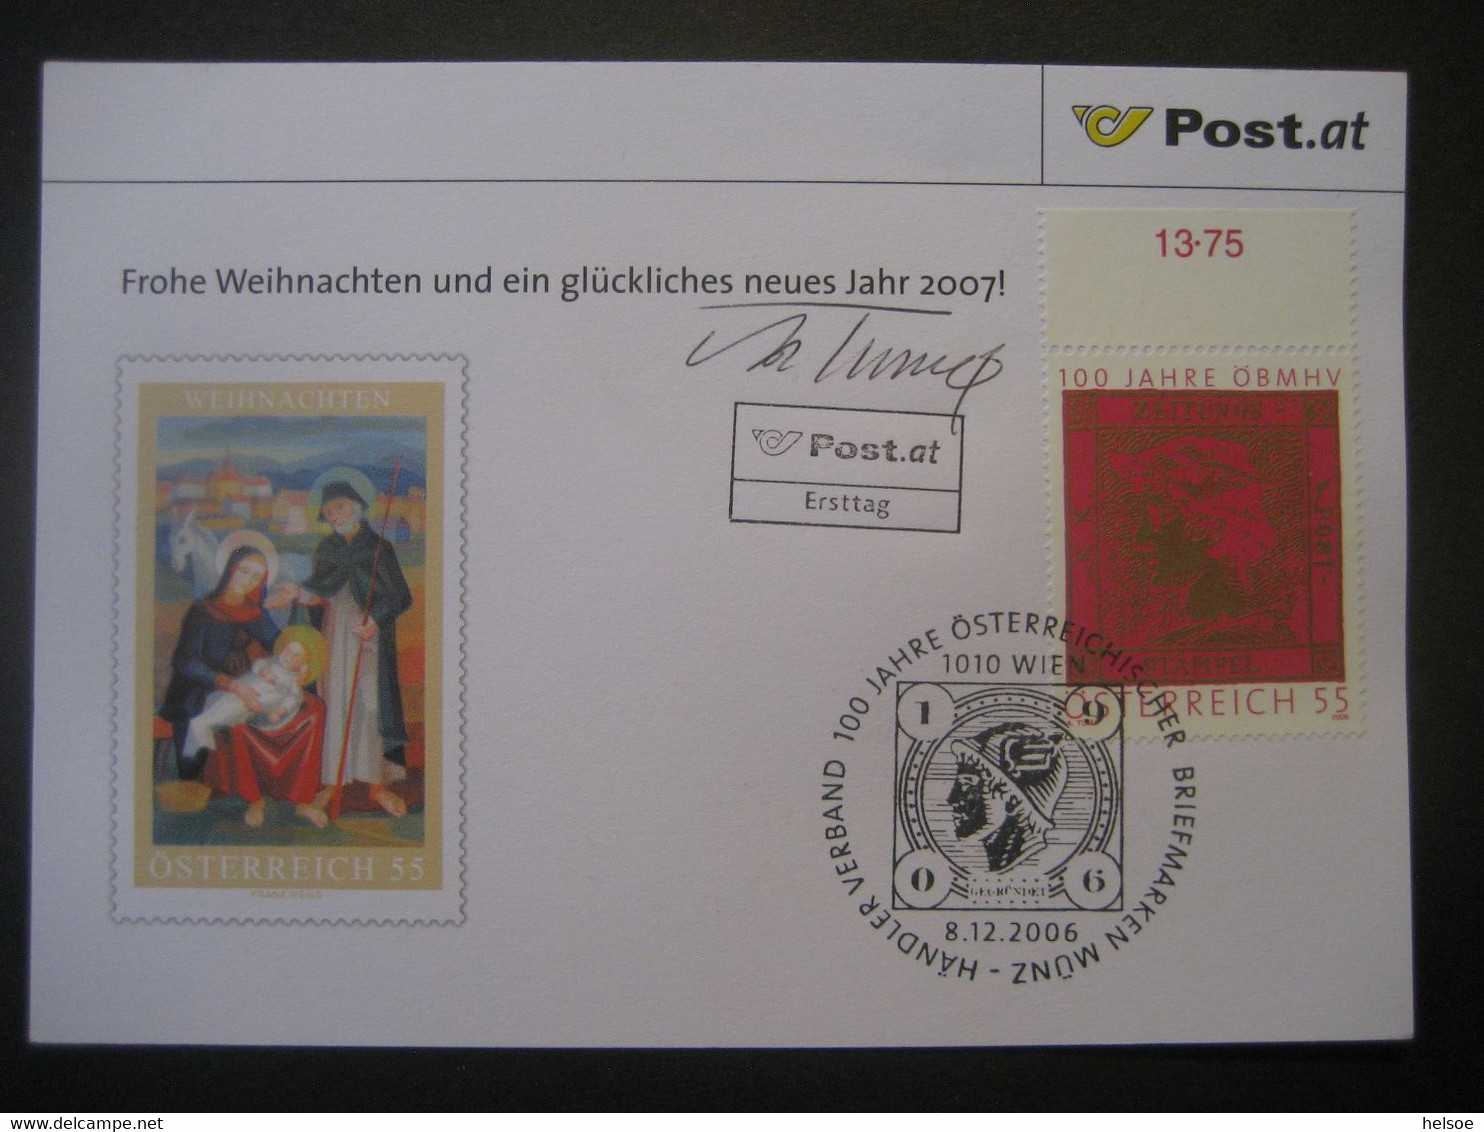 Osterreich- Advent 100 Jahre ÖBMSV, FDC Mit Autogramm Von Adolf Tuma - Storia Postale